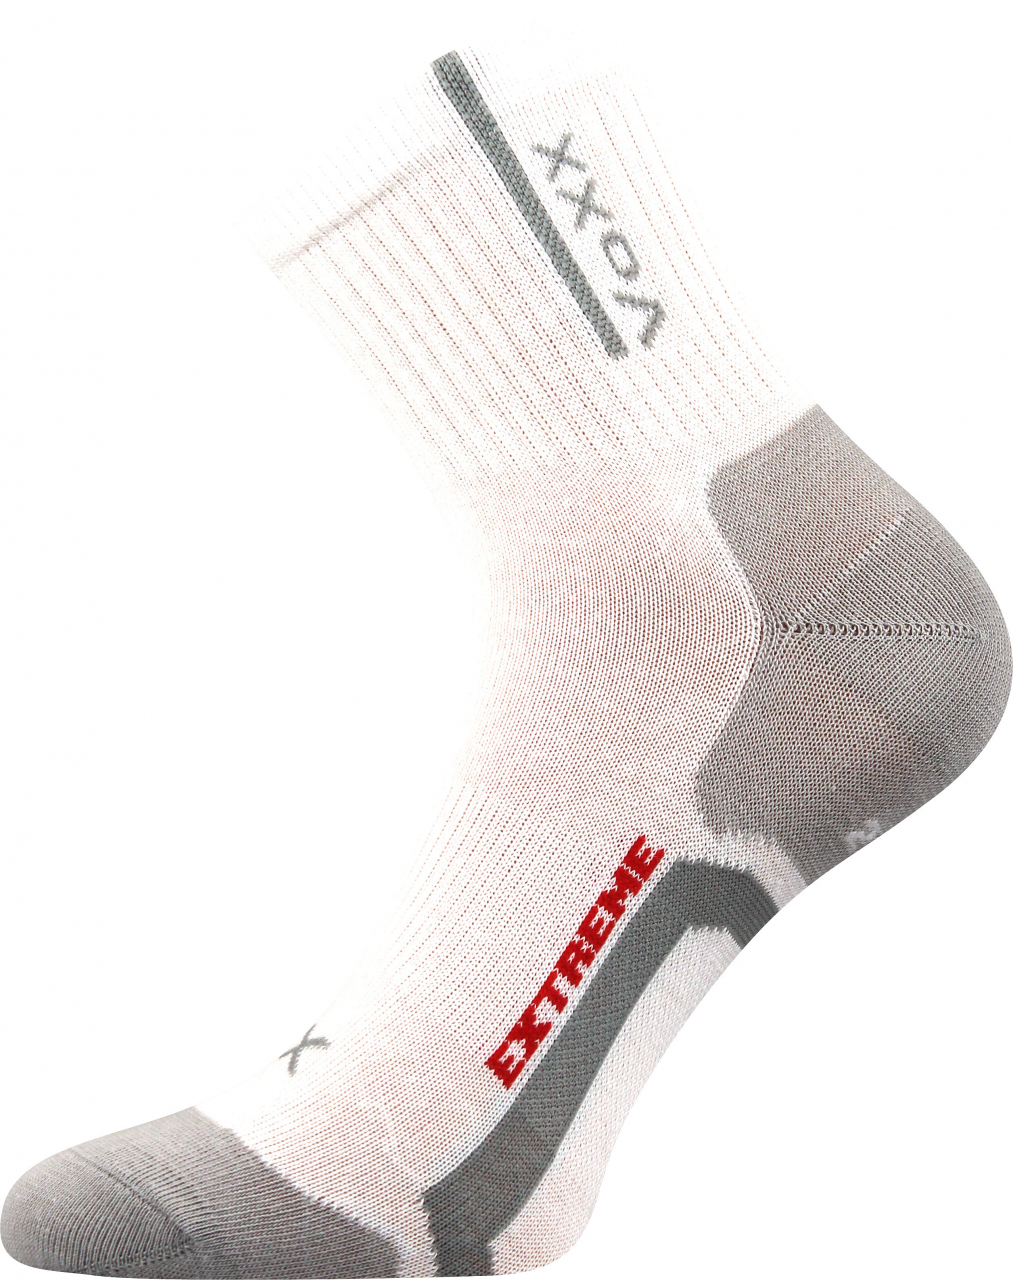 Ponožky antibakteriální Voxx Josef - bílé-šedé, 43-46